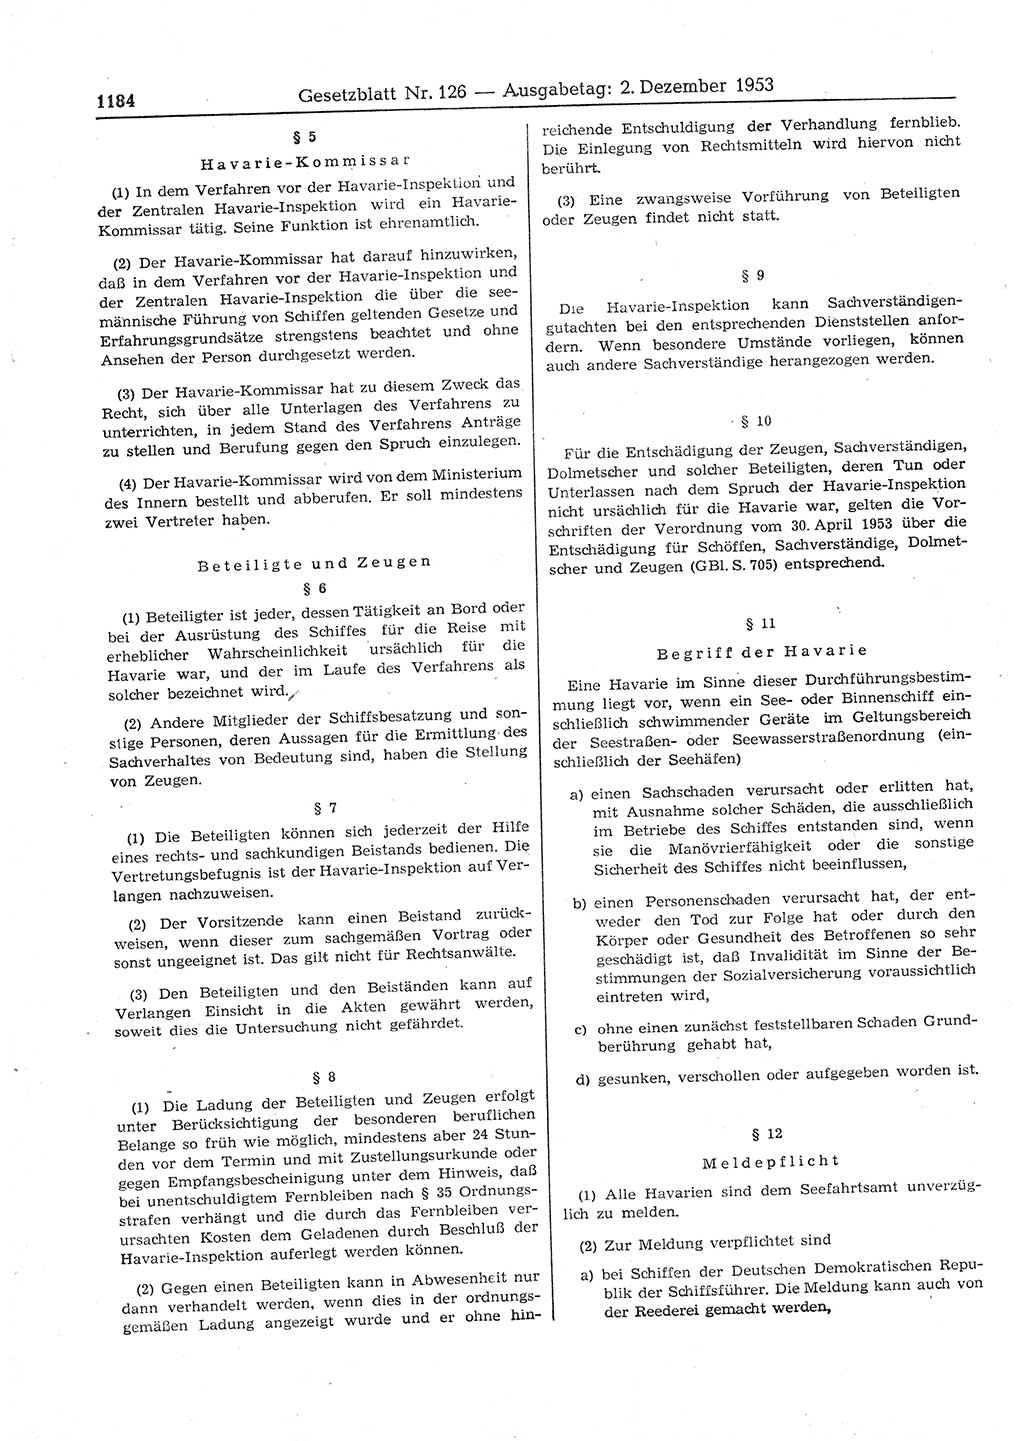 Gesetzblatt (GBl.) der Deutschen Demokratischen Republik (DDR) 1953, Seite 1184 (GBl. DDR 1953, S. 1184)